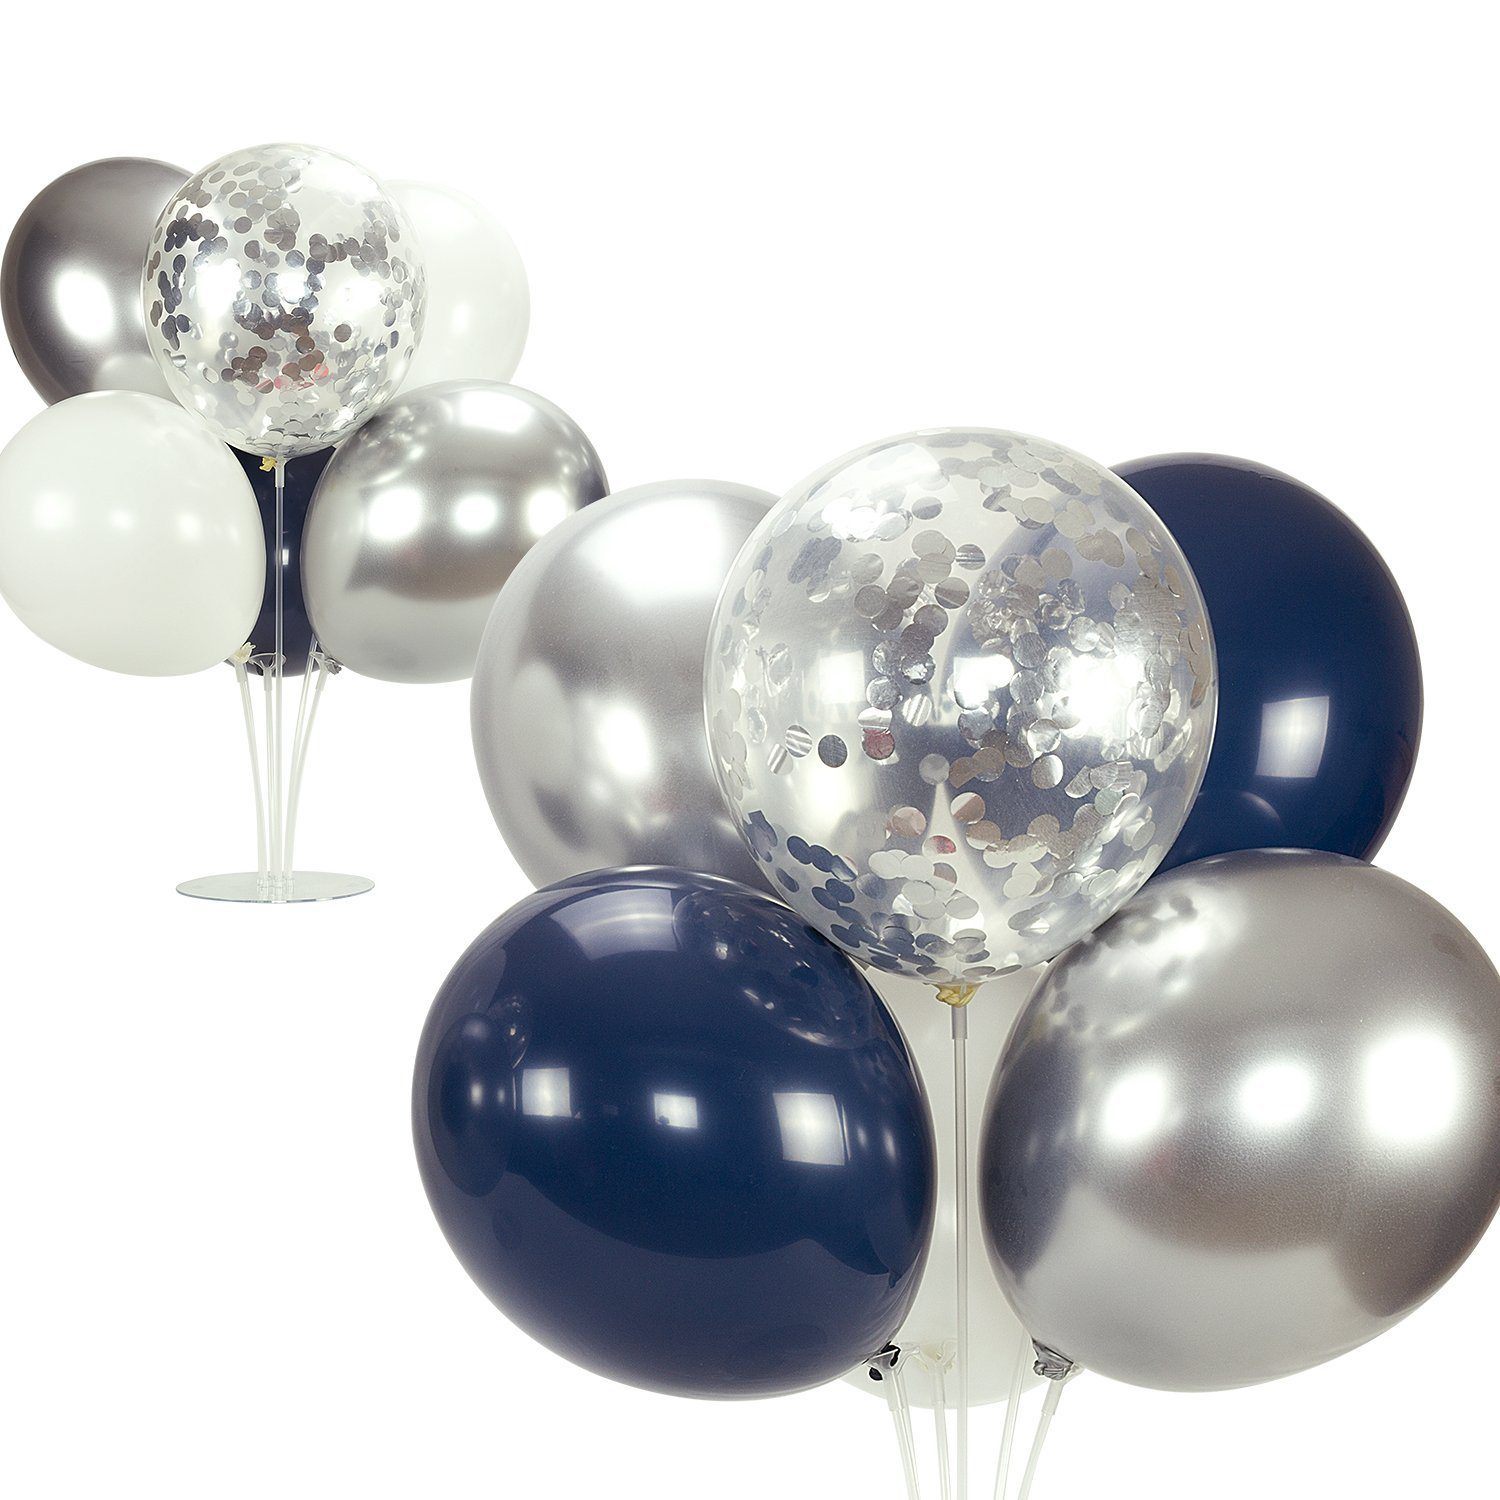 ballons bleu ciel x50/D30cm métallisé - Hyperfetes